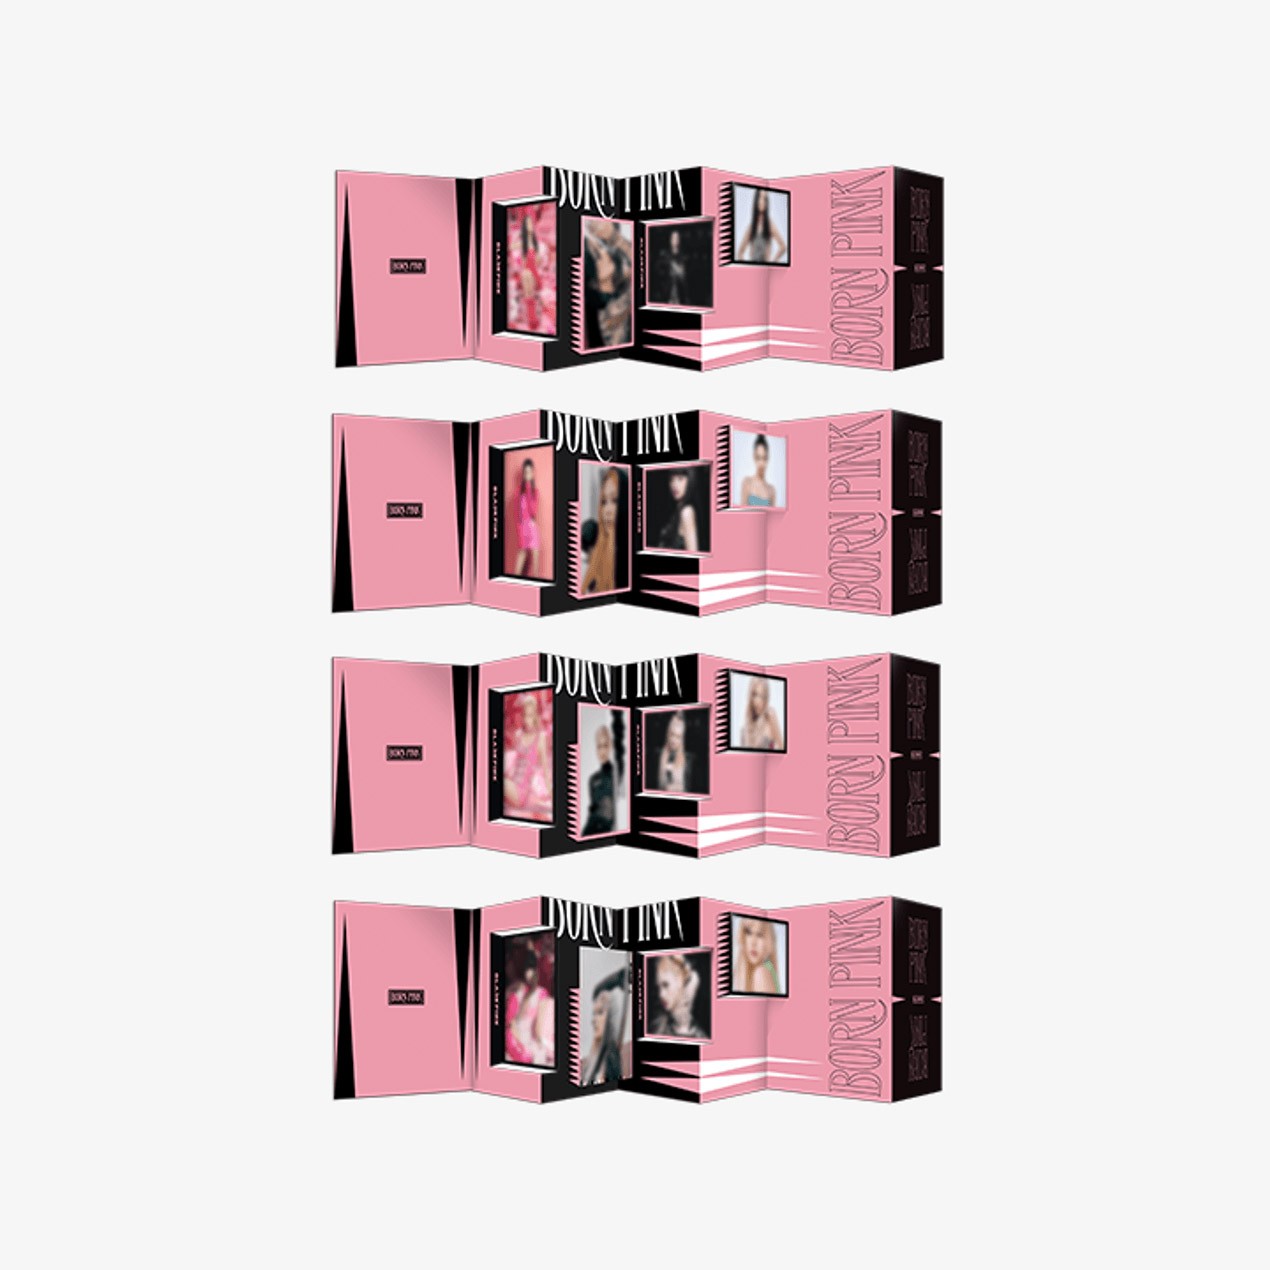 BlackPink - Born Pink - Disk Photo Binder – Harumio